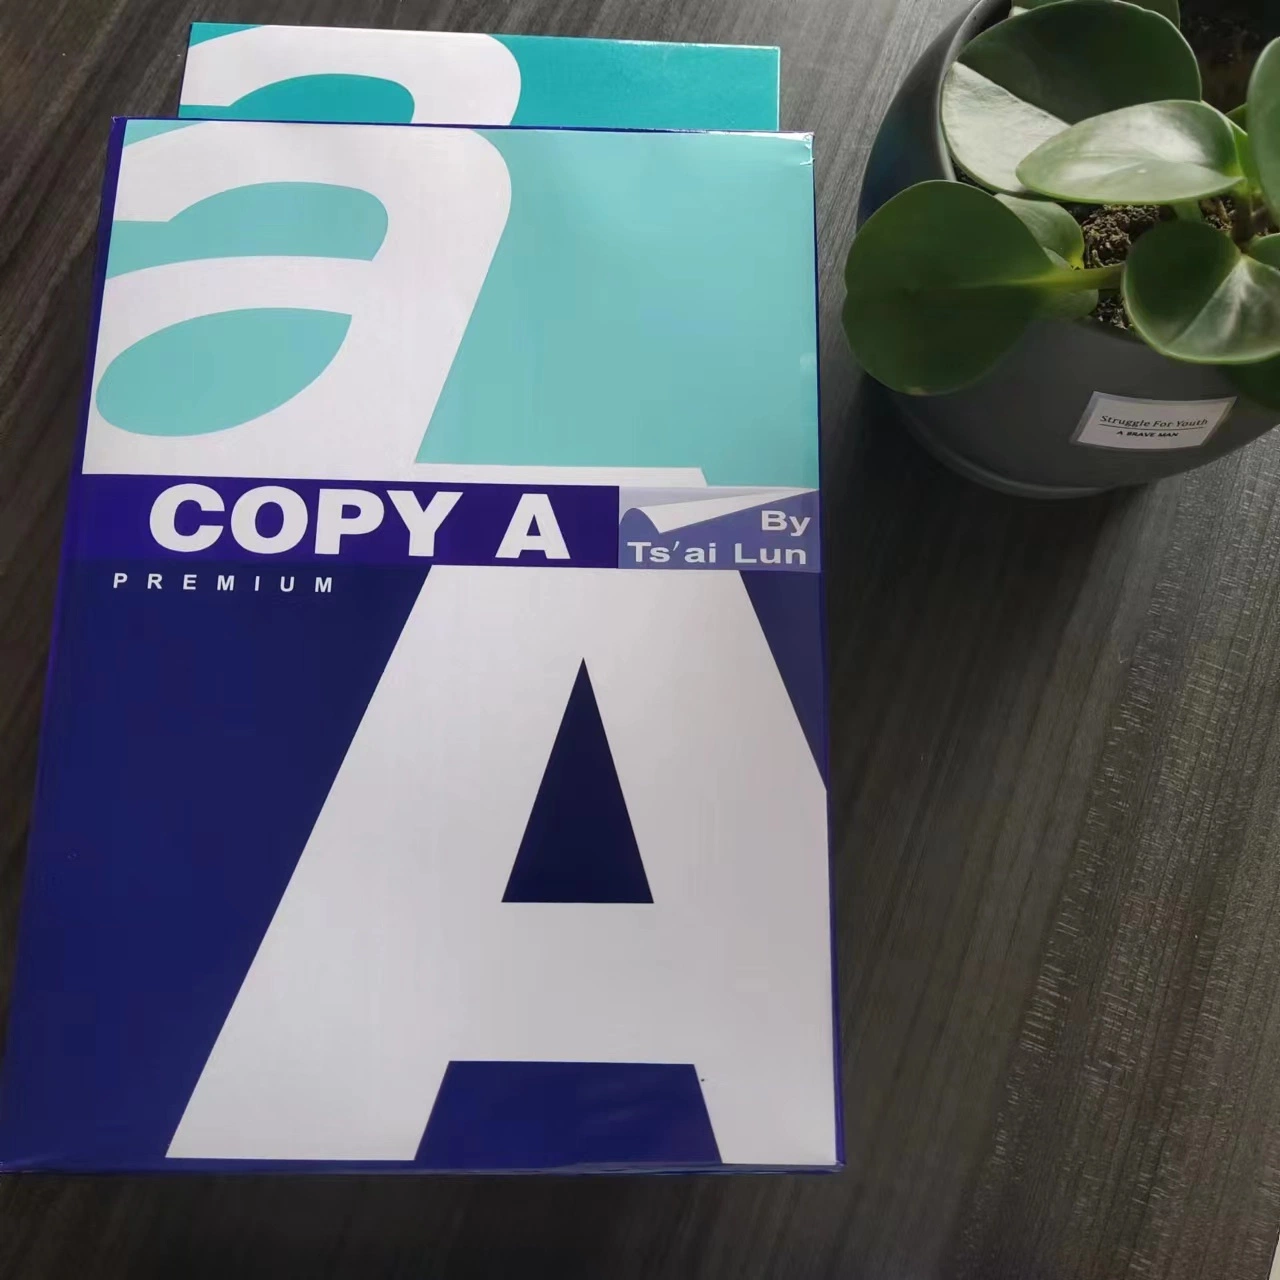 Papel de cópia A4 Premium para material de escritório e escolar